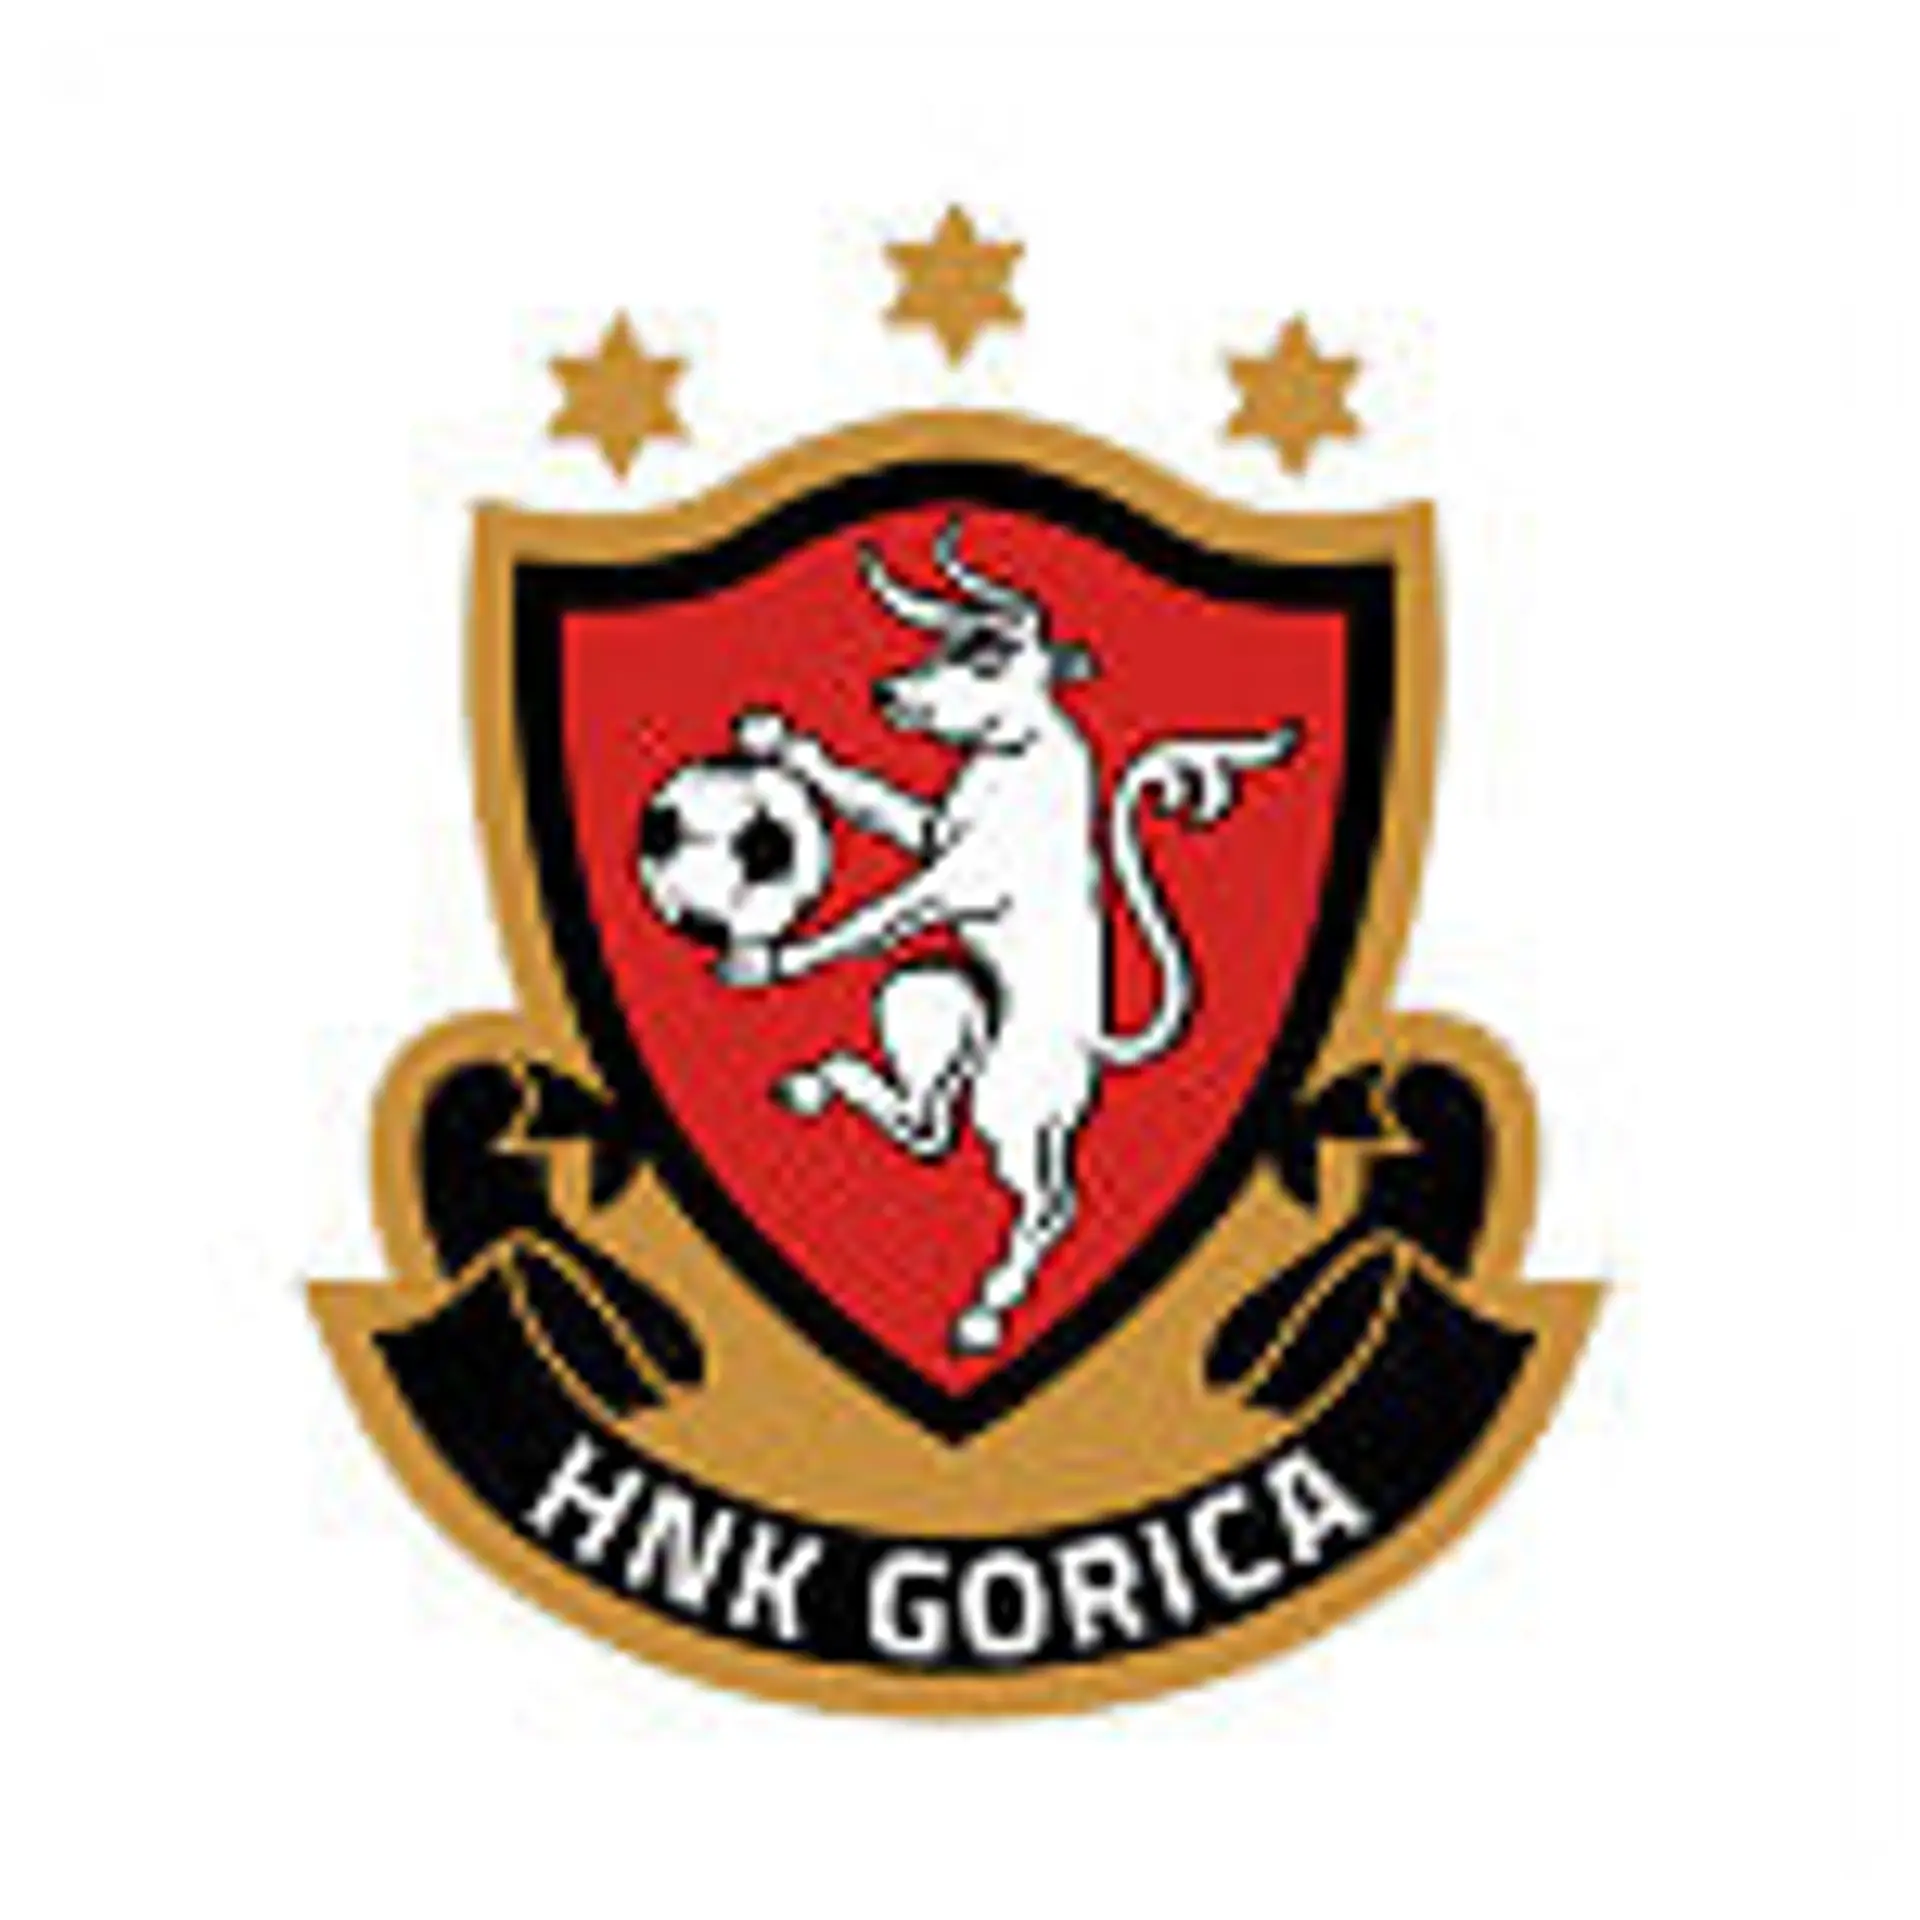 Velika Gorica: Gorica - Hajduk 0:4 • HNK Hajduk Split